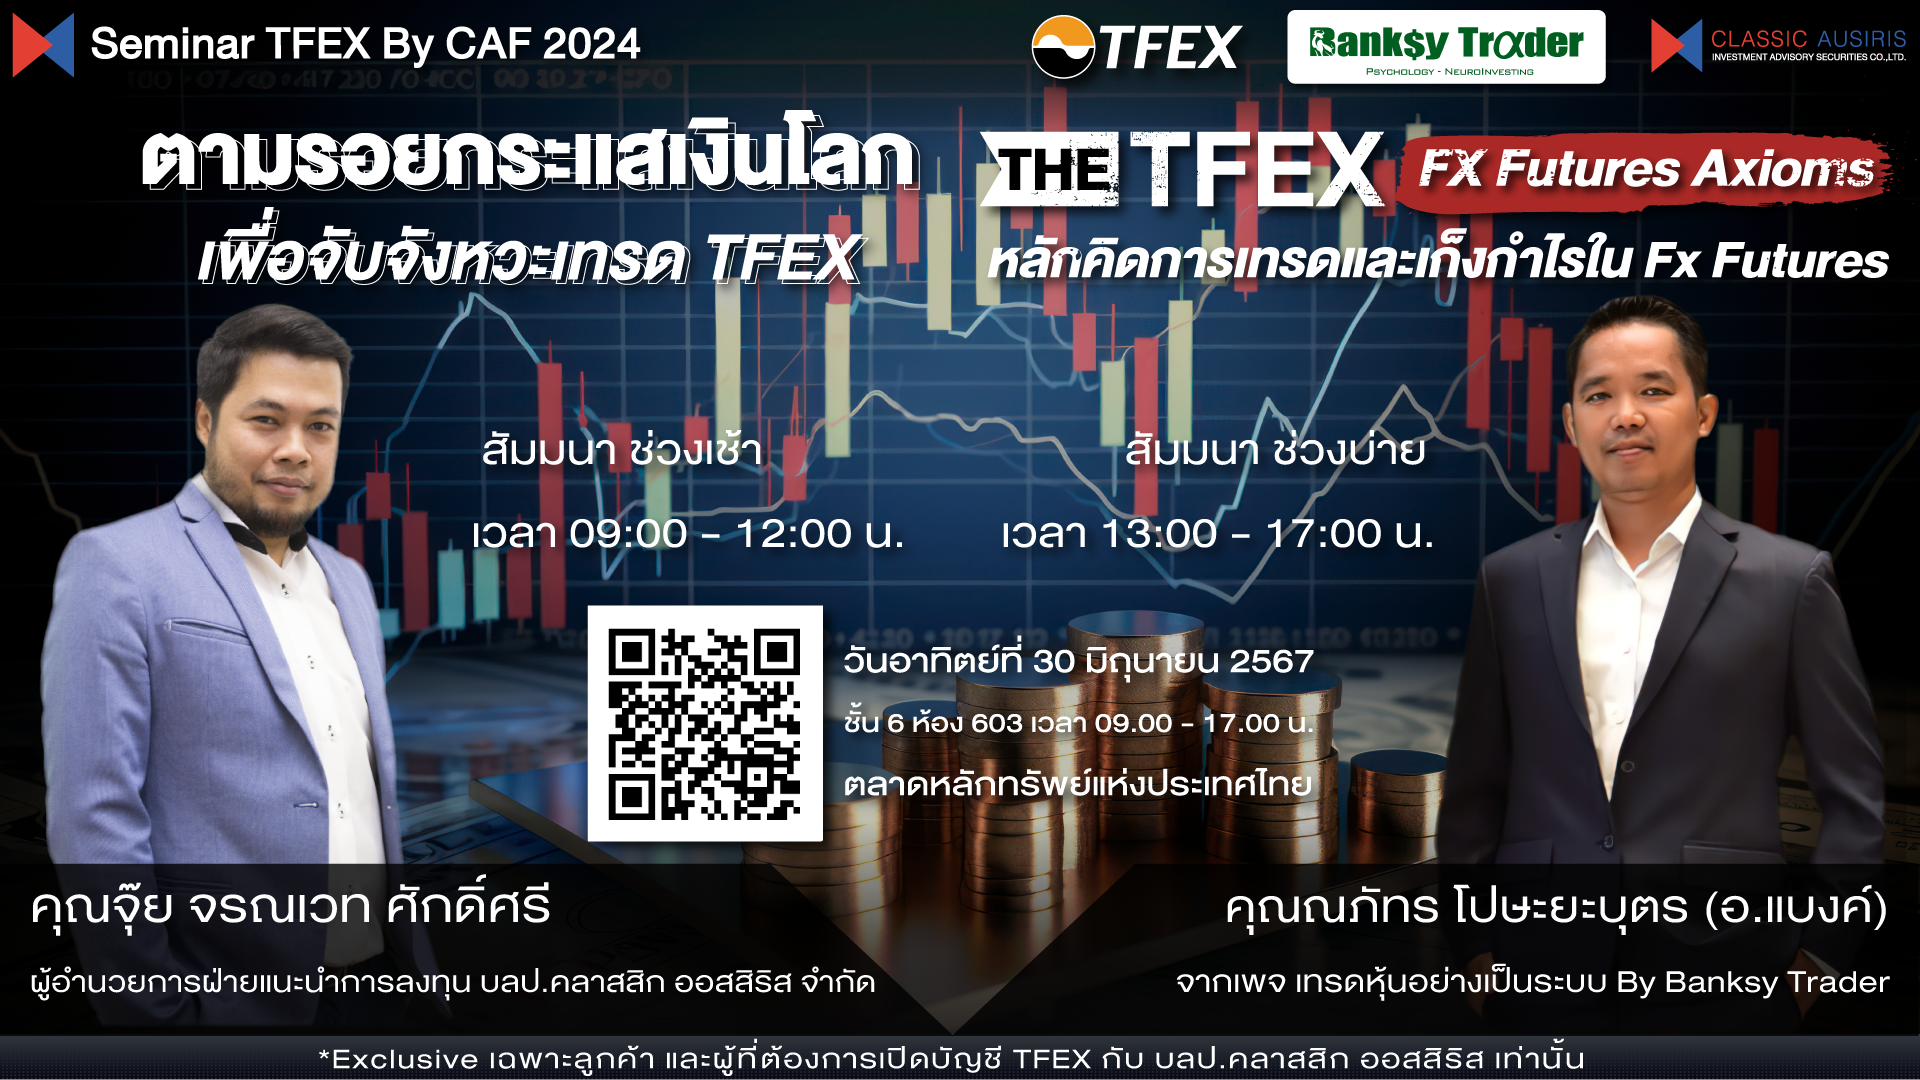 ตามรอยกระแสเงินโลก เพื่อจับจังหวะเทรด TFEX / The TFEX FX Futures Axioms  หลักคิดการเทรดและเก็งกำไรใน Fx Futures 